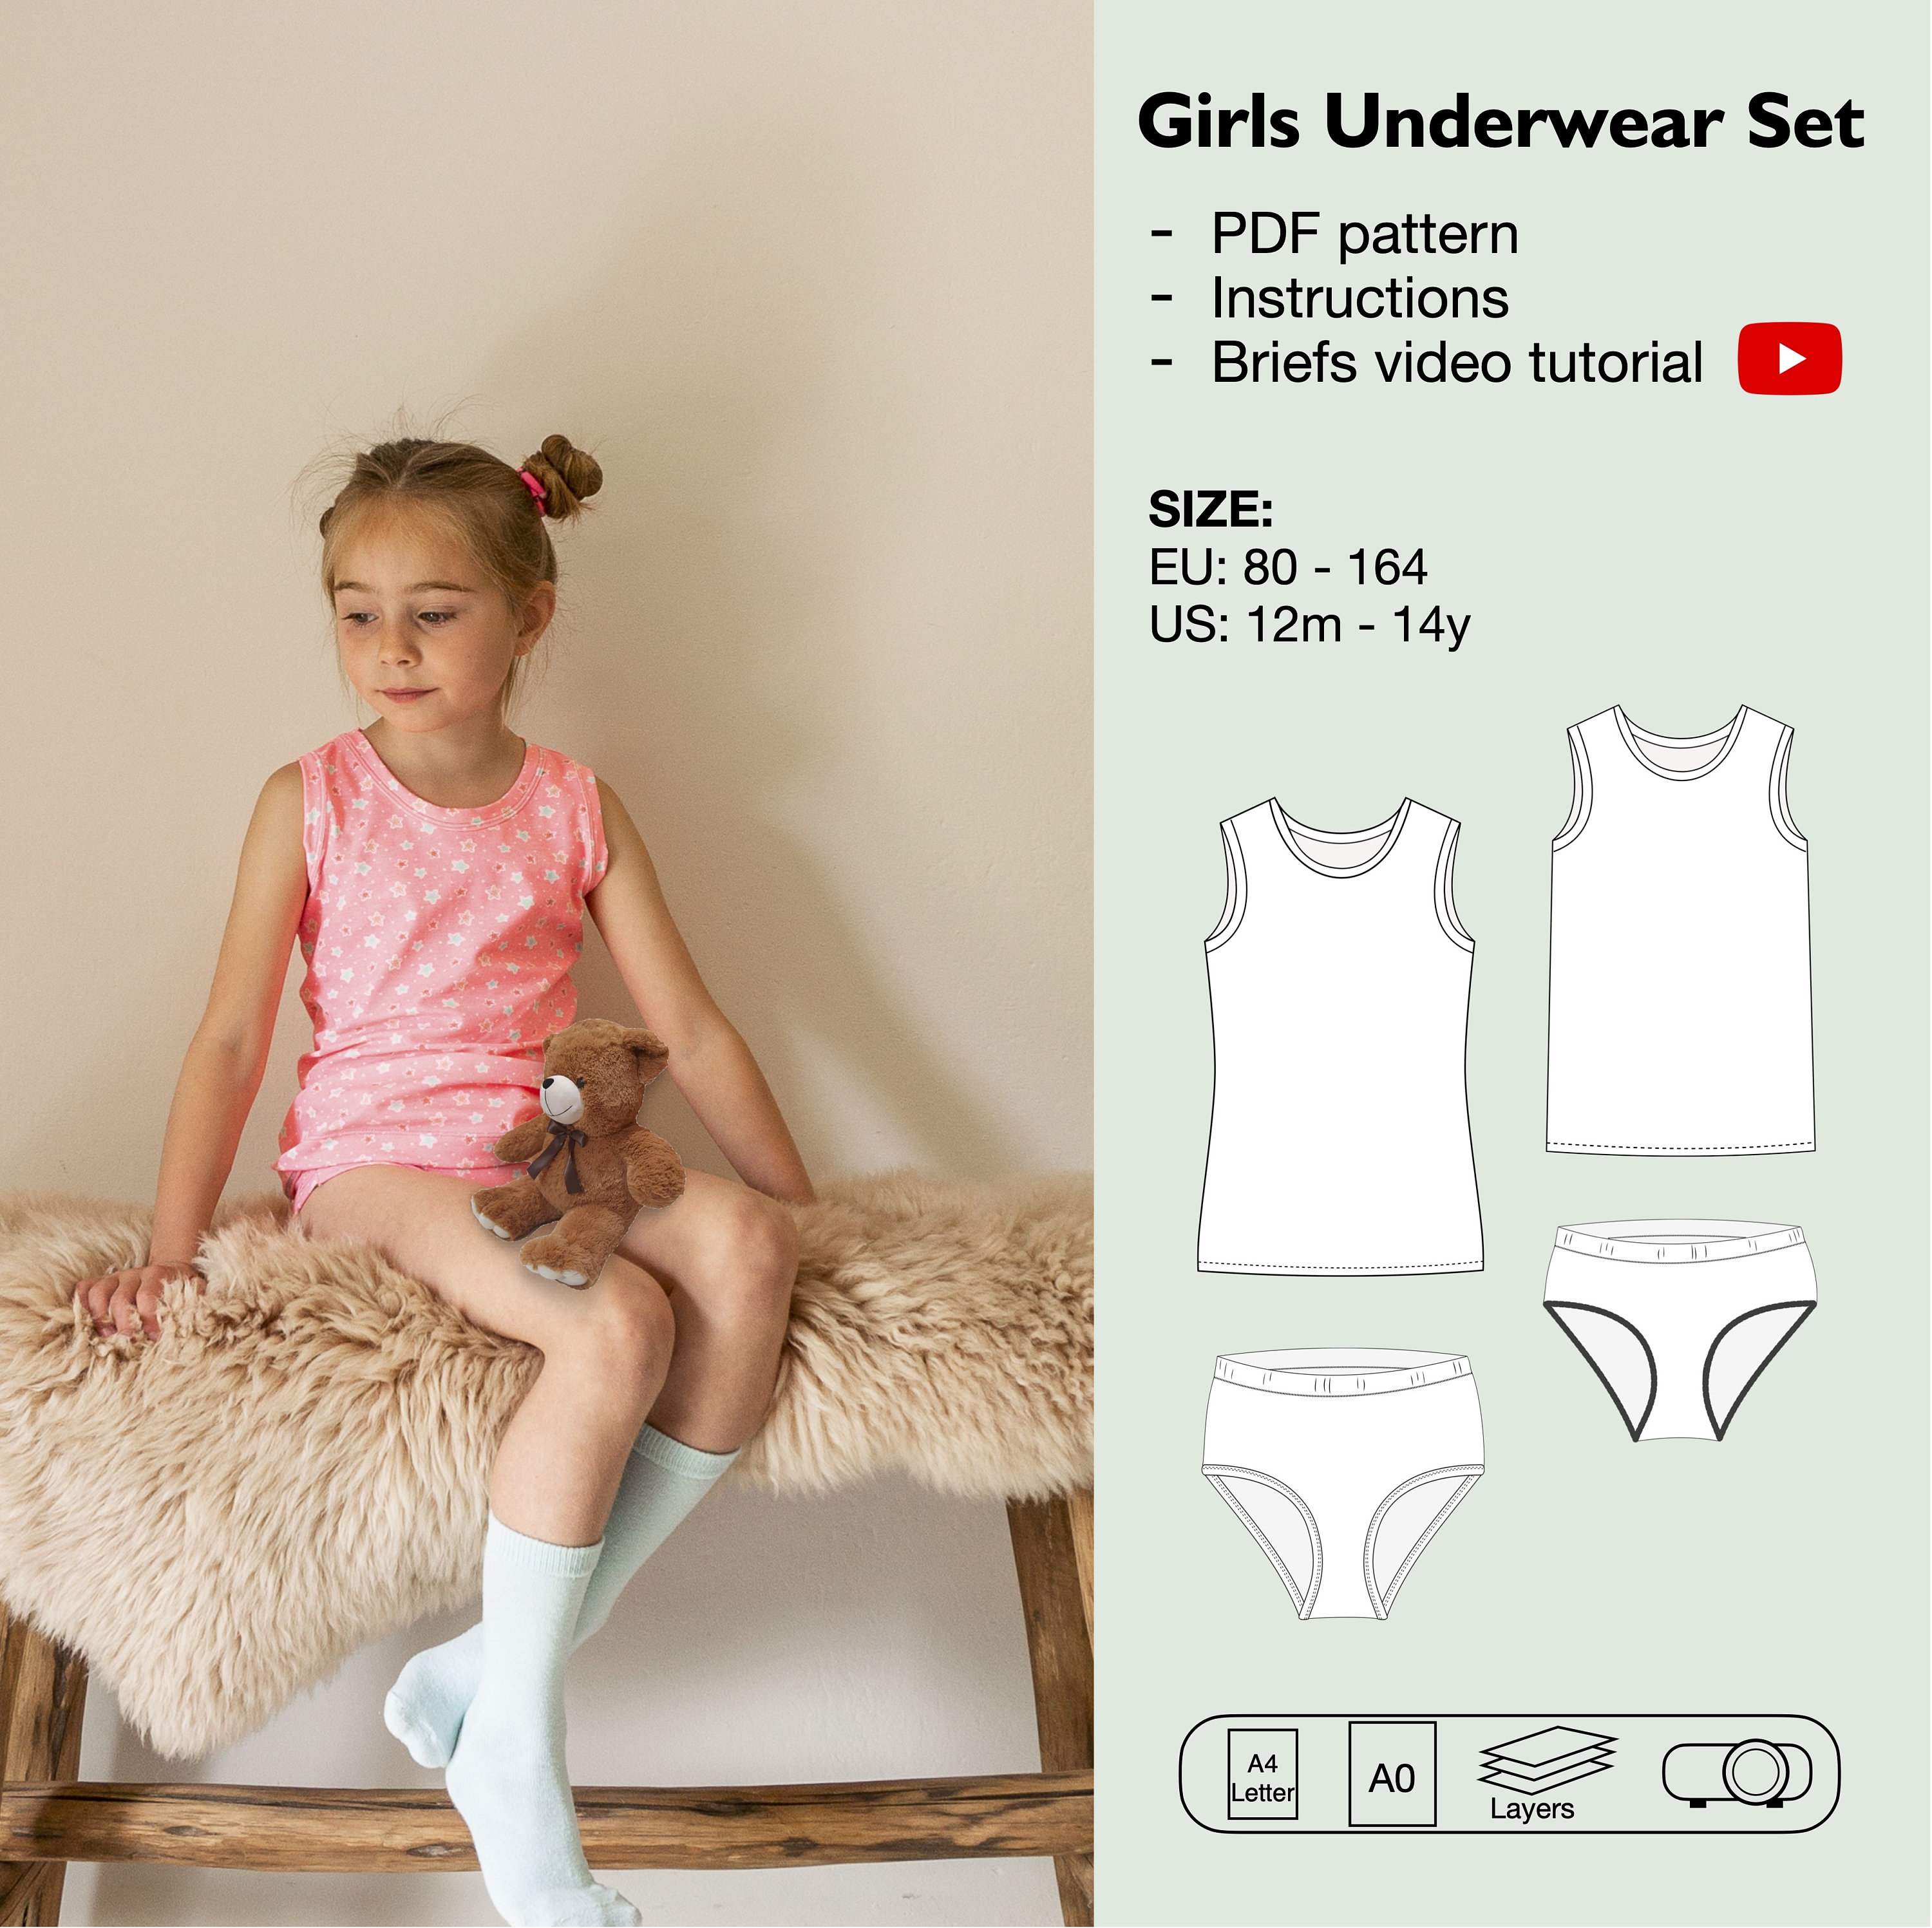 Girls underwear set sewing pattern